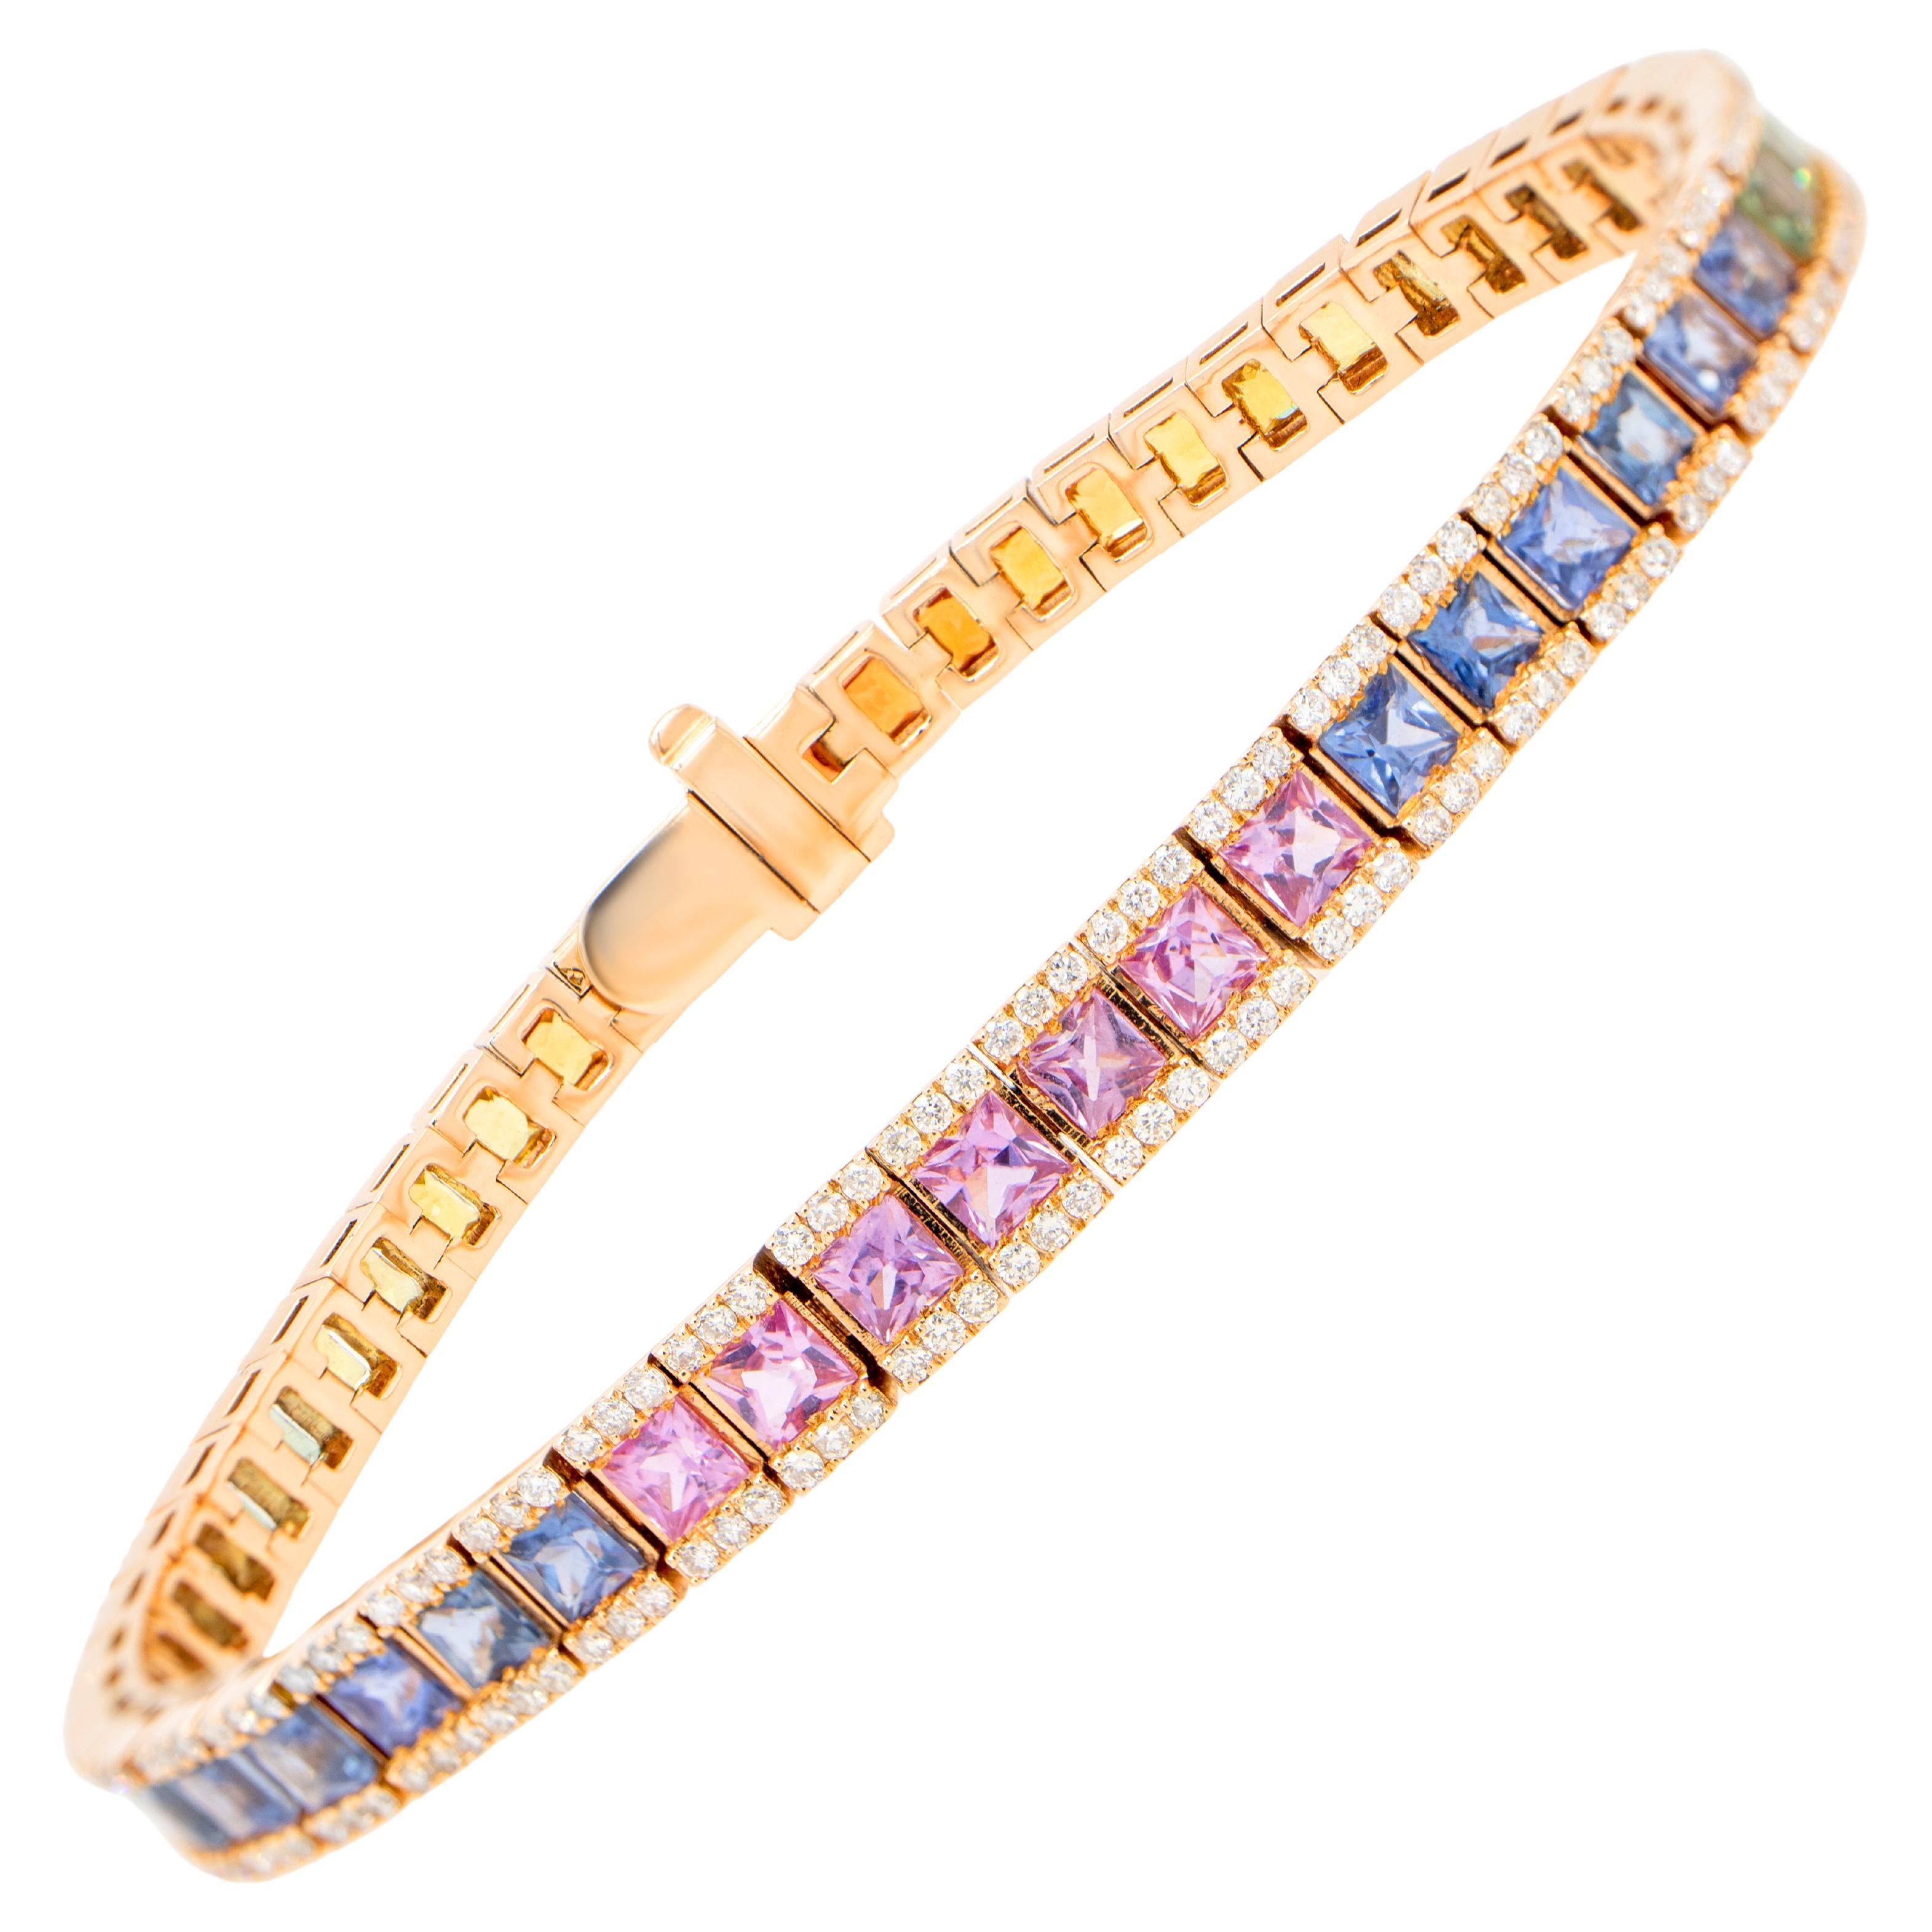 Square Cut Multicolor Sapphires Rainbow Bracelet Diamond Setting 9 Carats 18K For Sale